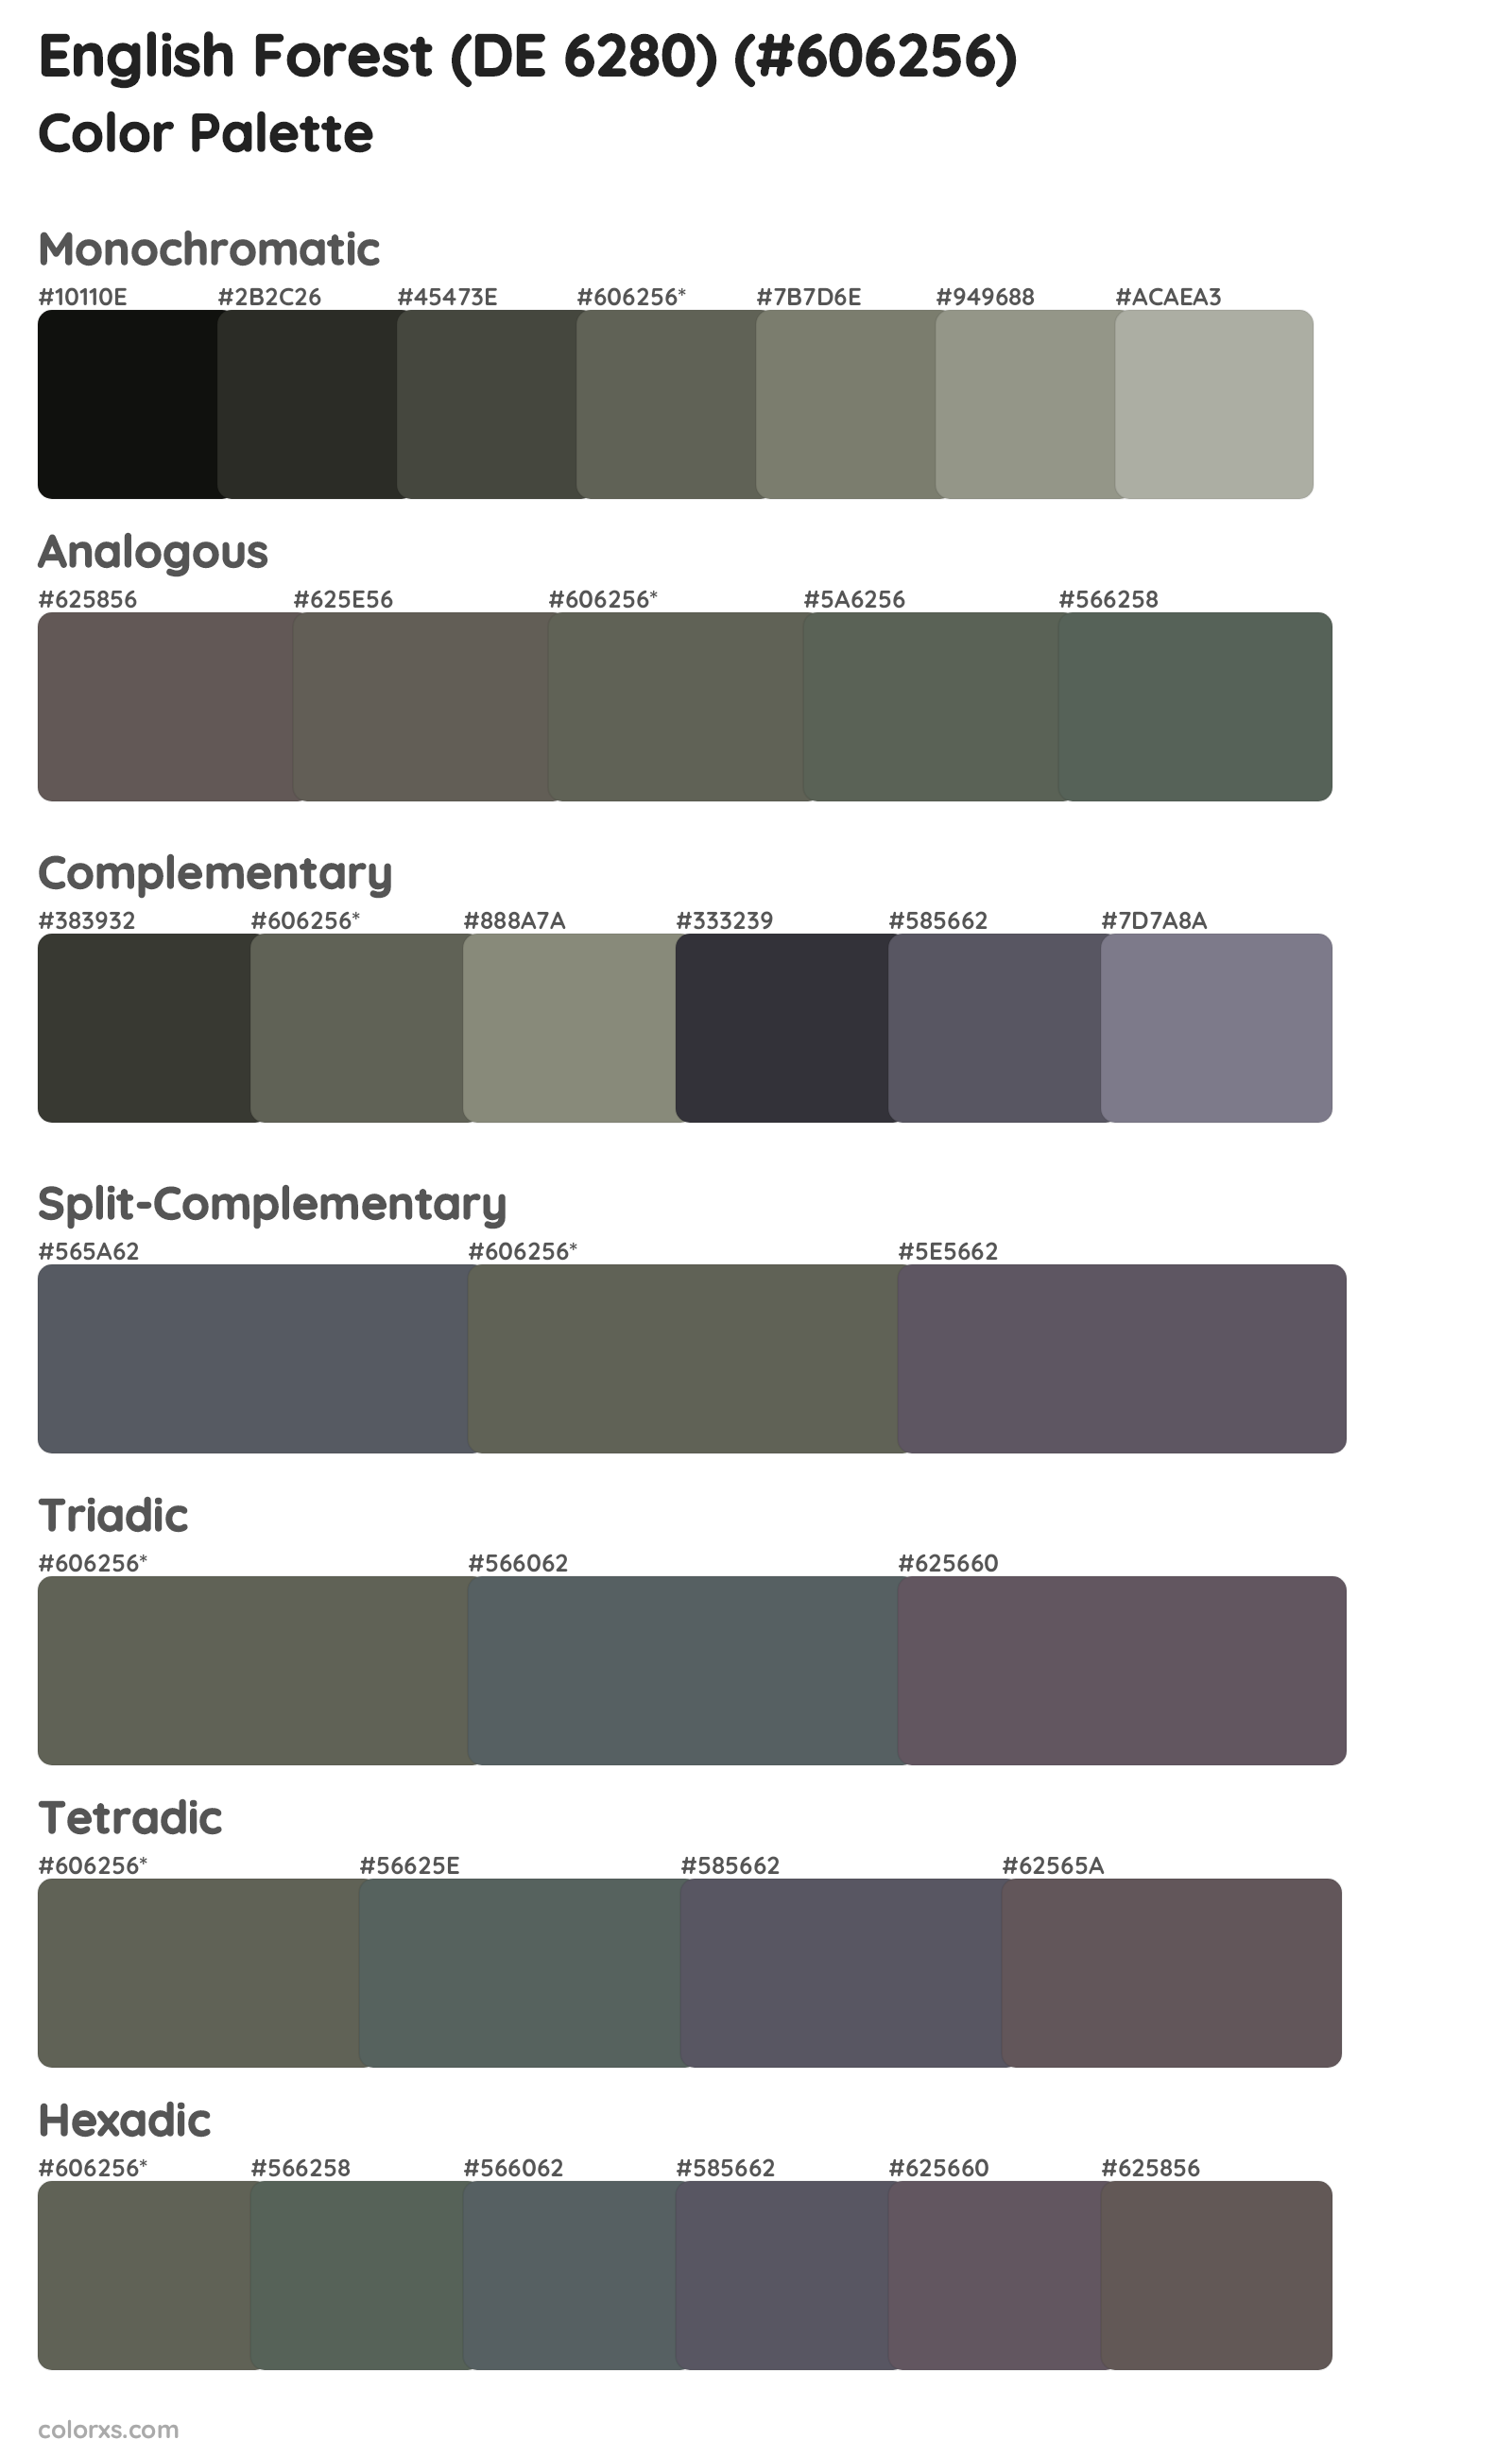 English Forest (DE 6280) Color Scheme Palettes